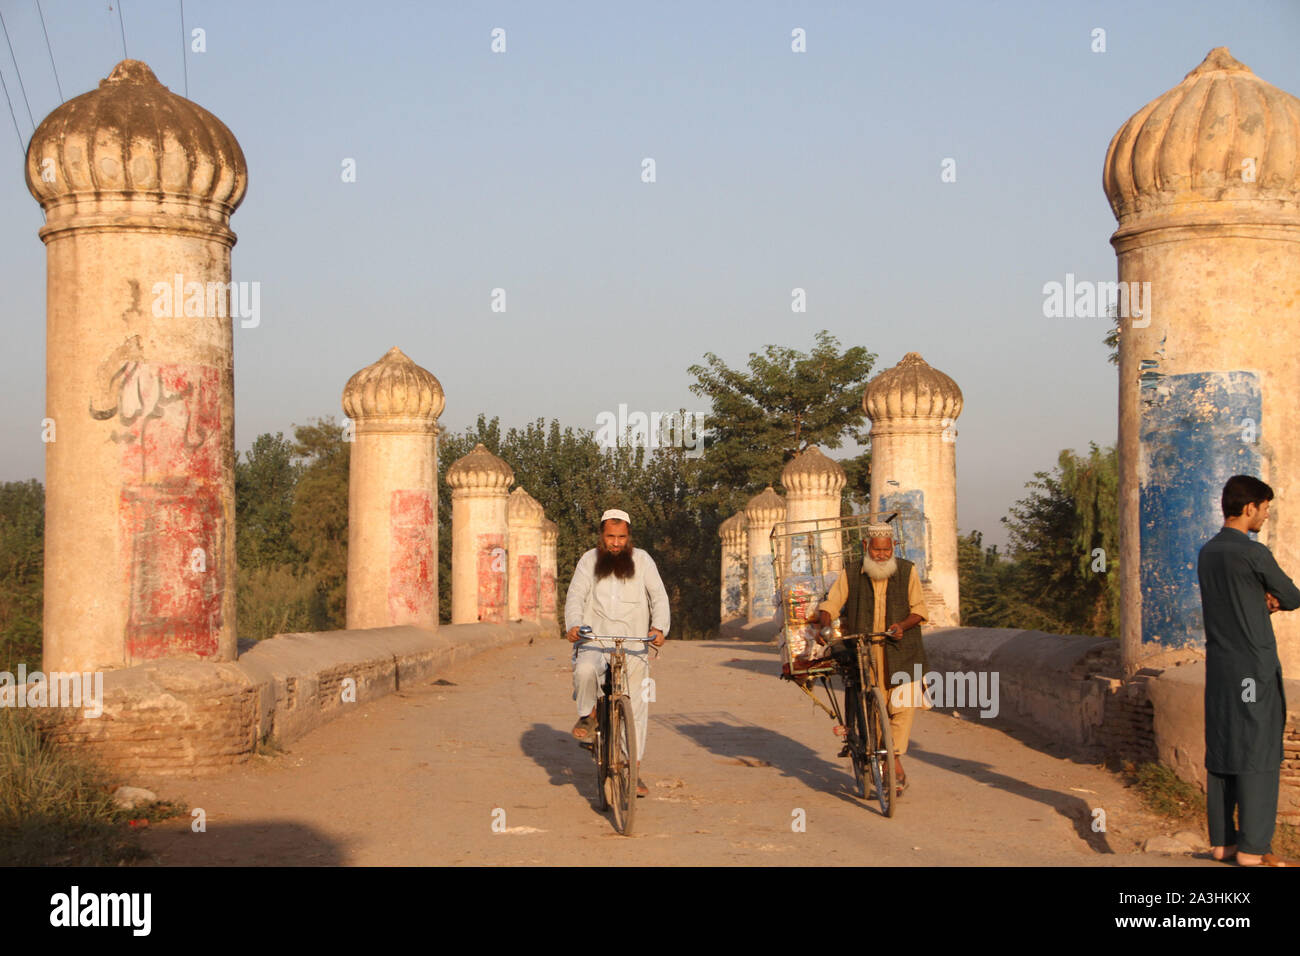 Il Chuha Gujar Bridge si erge sopra bara del fiume e vicino al Chuha Gujar village, secondo un'opinione, Sher Shah Suri che hanno governato l'India dal 1476 al 1545, aveva costruito il ponte mentre un altro dice che il re Shah Jahan, che regnò dal 1627 al 1658, ha eretto la struttura. Eppure il terzo parere attribuisce la sua costruzione al Haji Karim Bakhsh Sethi, una nota business tycoon vissuto nel periodo Mughal, quindi la gente del posto lo chiamano ponte Sethian ma residenti comunemente conosciuto dai suoi due nomi, Bara o Speen (bianco) ponte. Circa 290 piedi di lunghezza e 33 metri di larghezza fondata oltre 26 grandi e piccoli pilastri; t Foto Stock